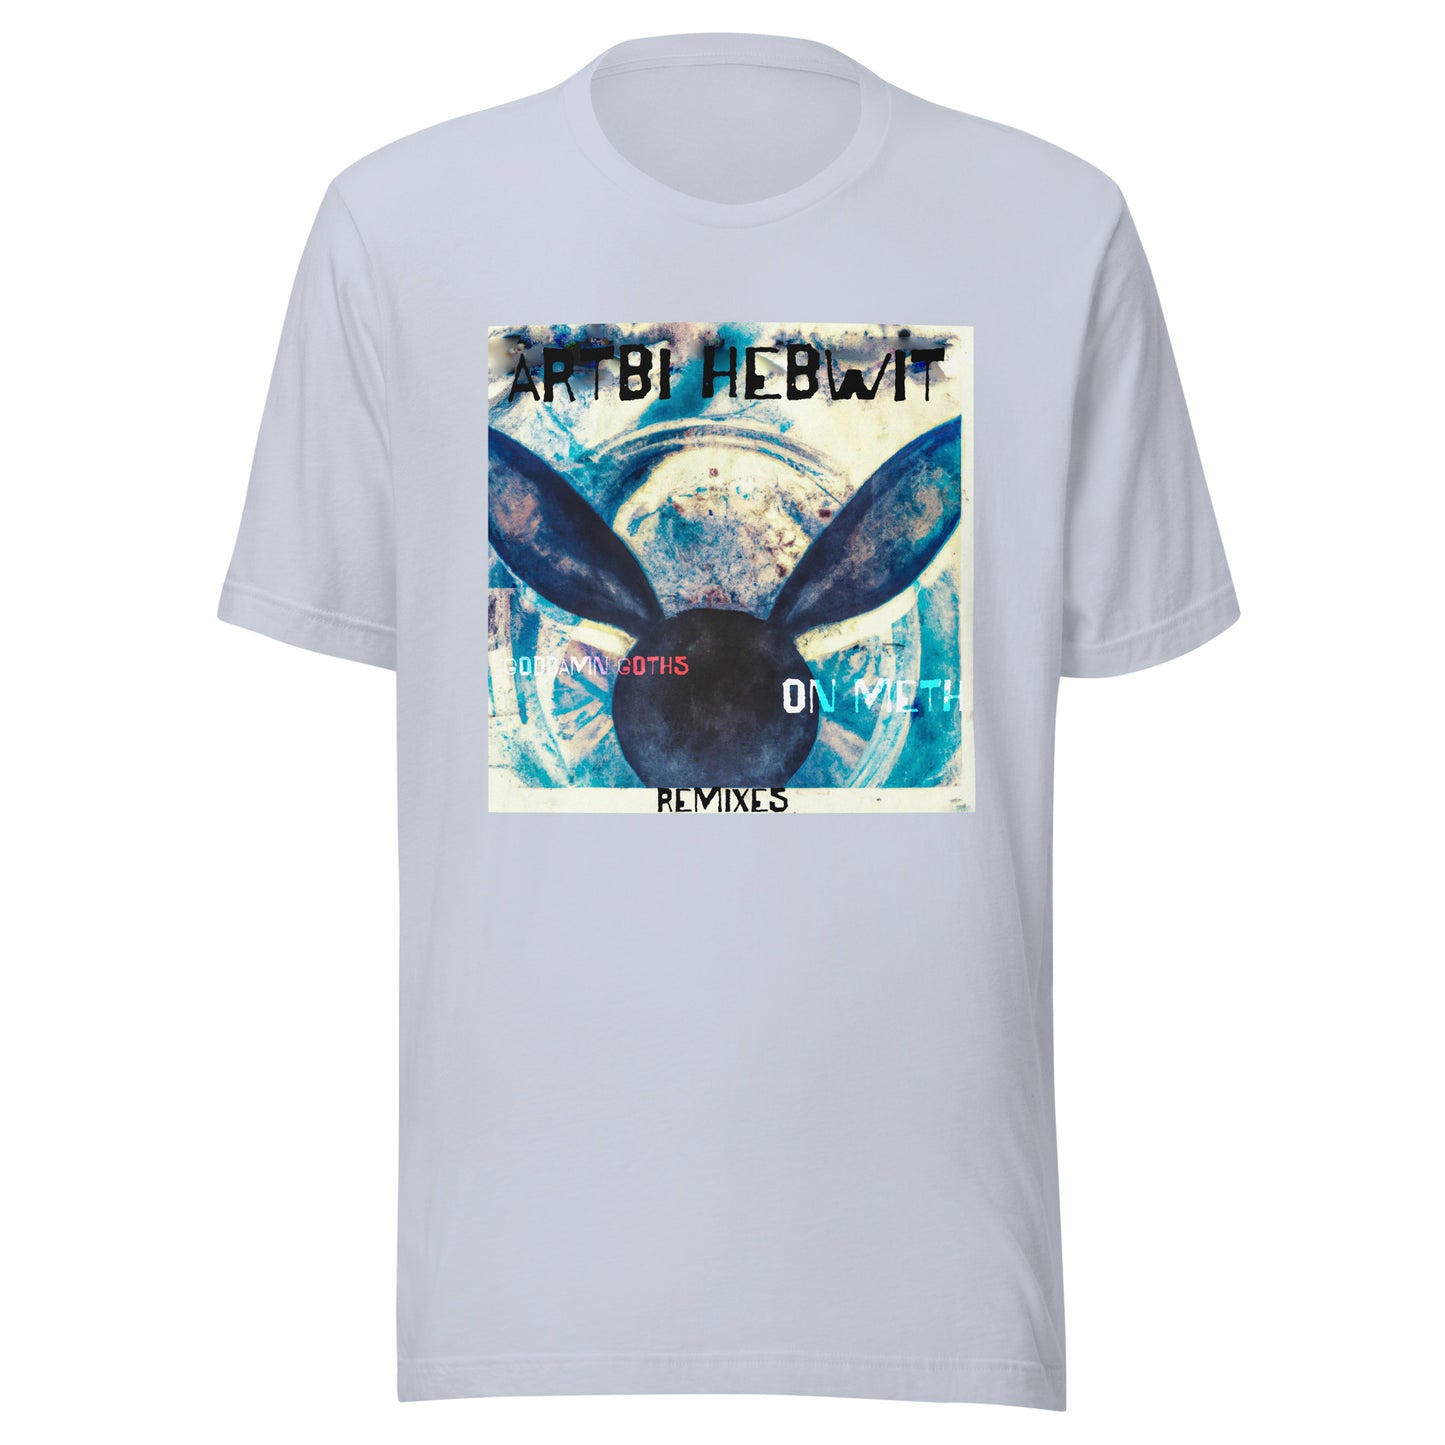 ARTBI HEBWIT - Unisex t-shirt